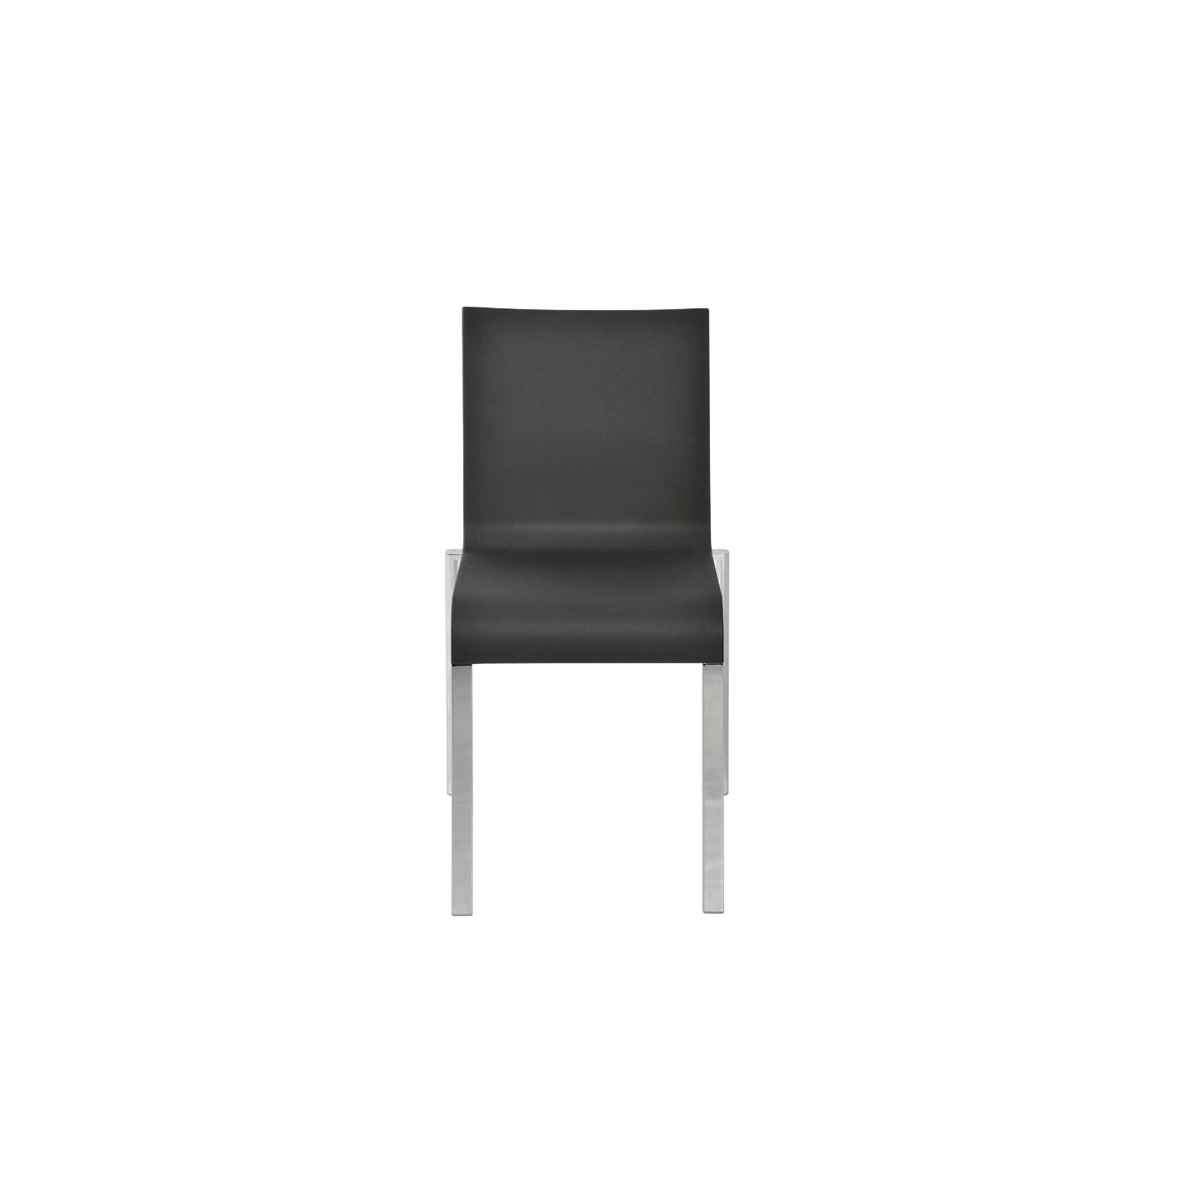 03 Chair